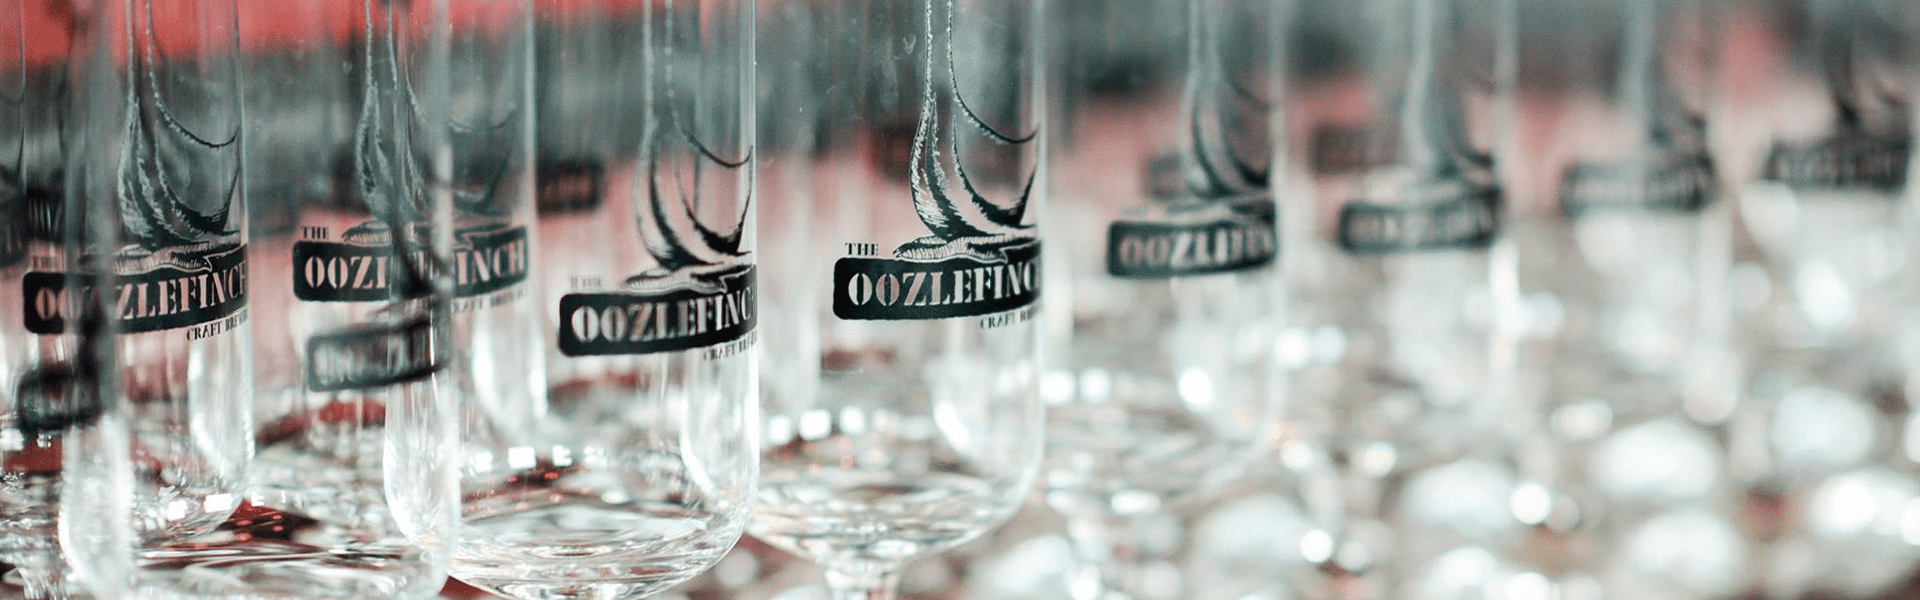 Oozlefinch Beers & Blending